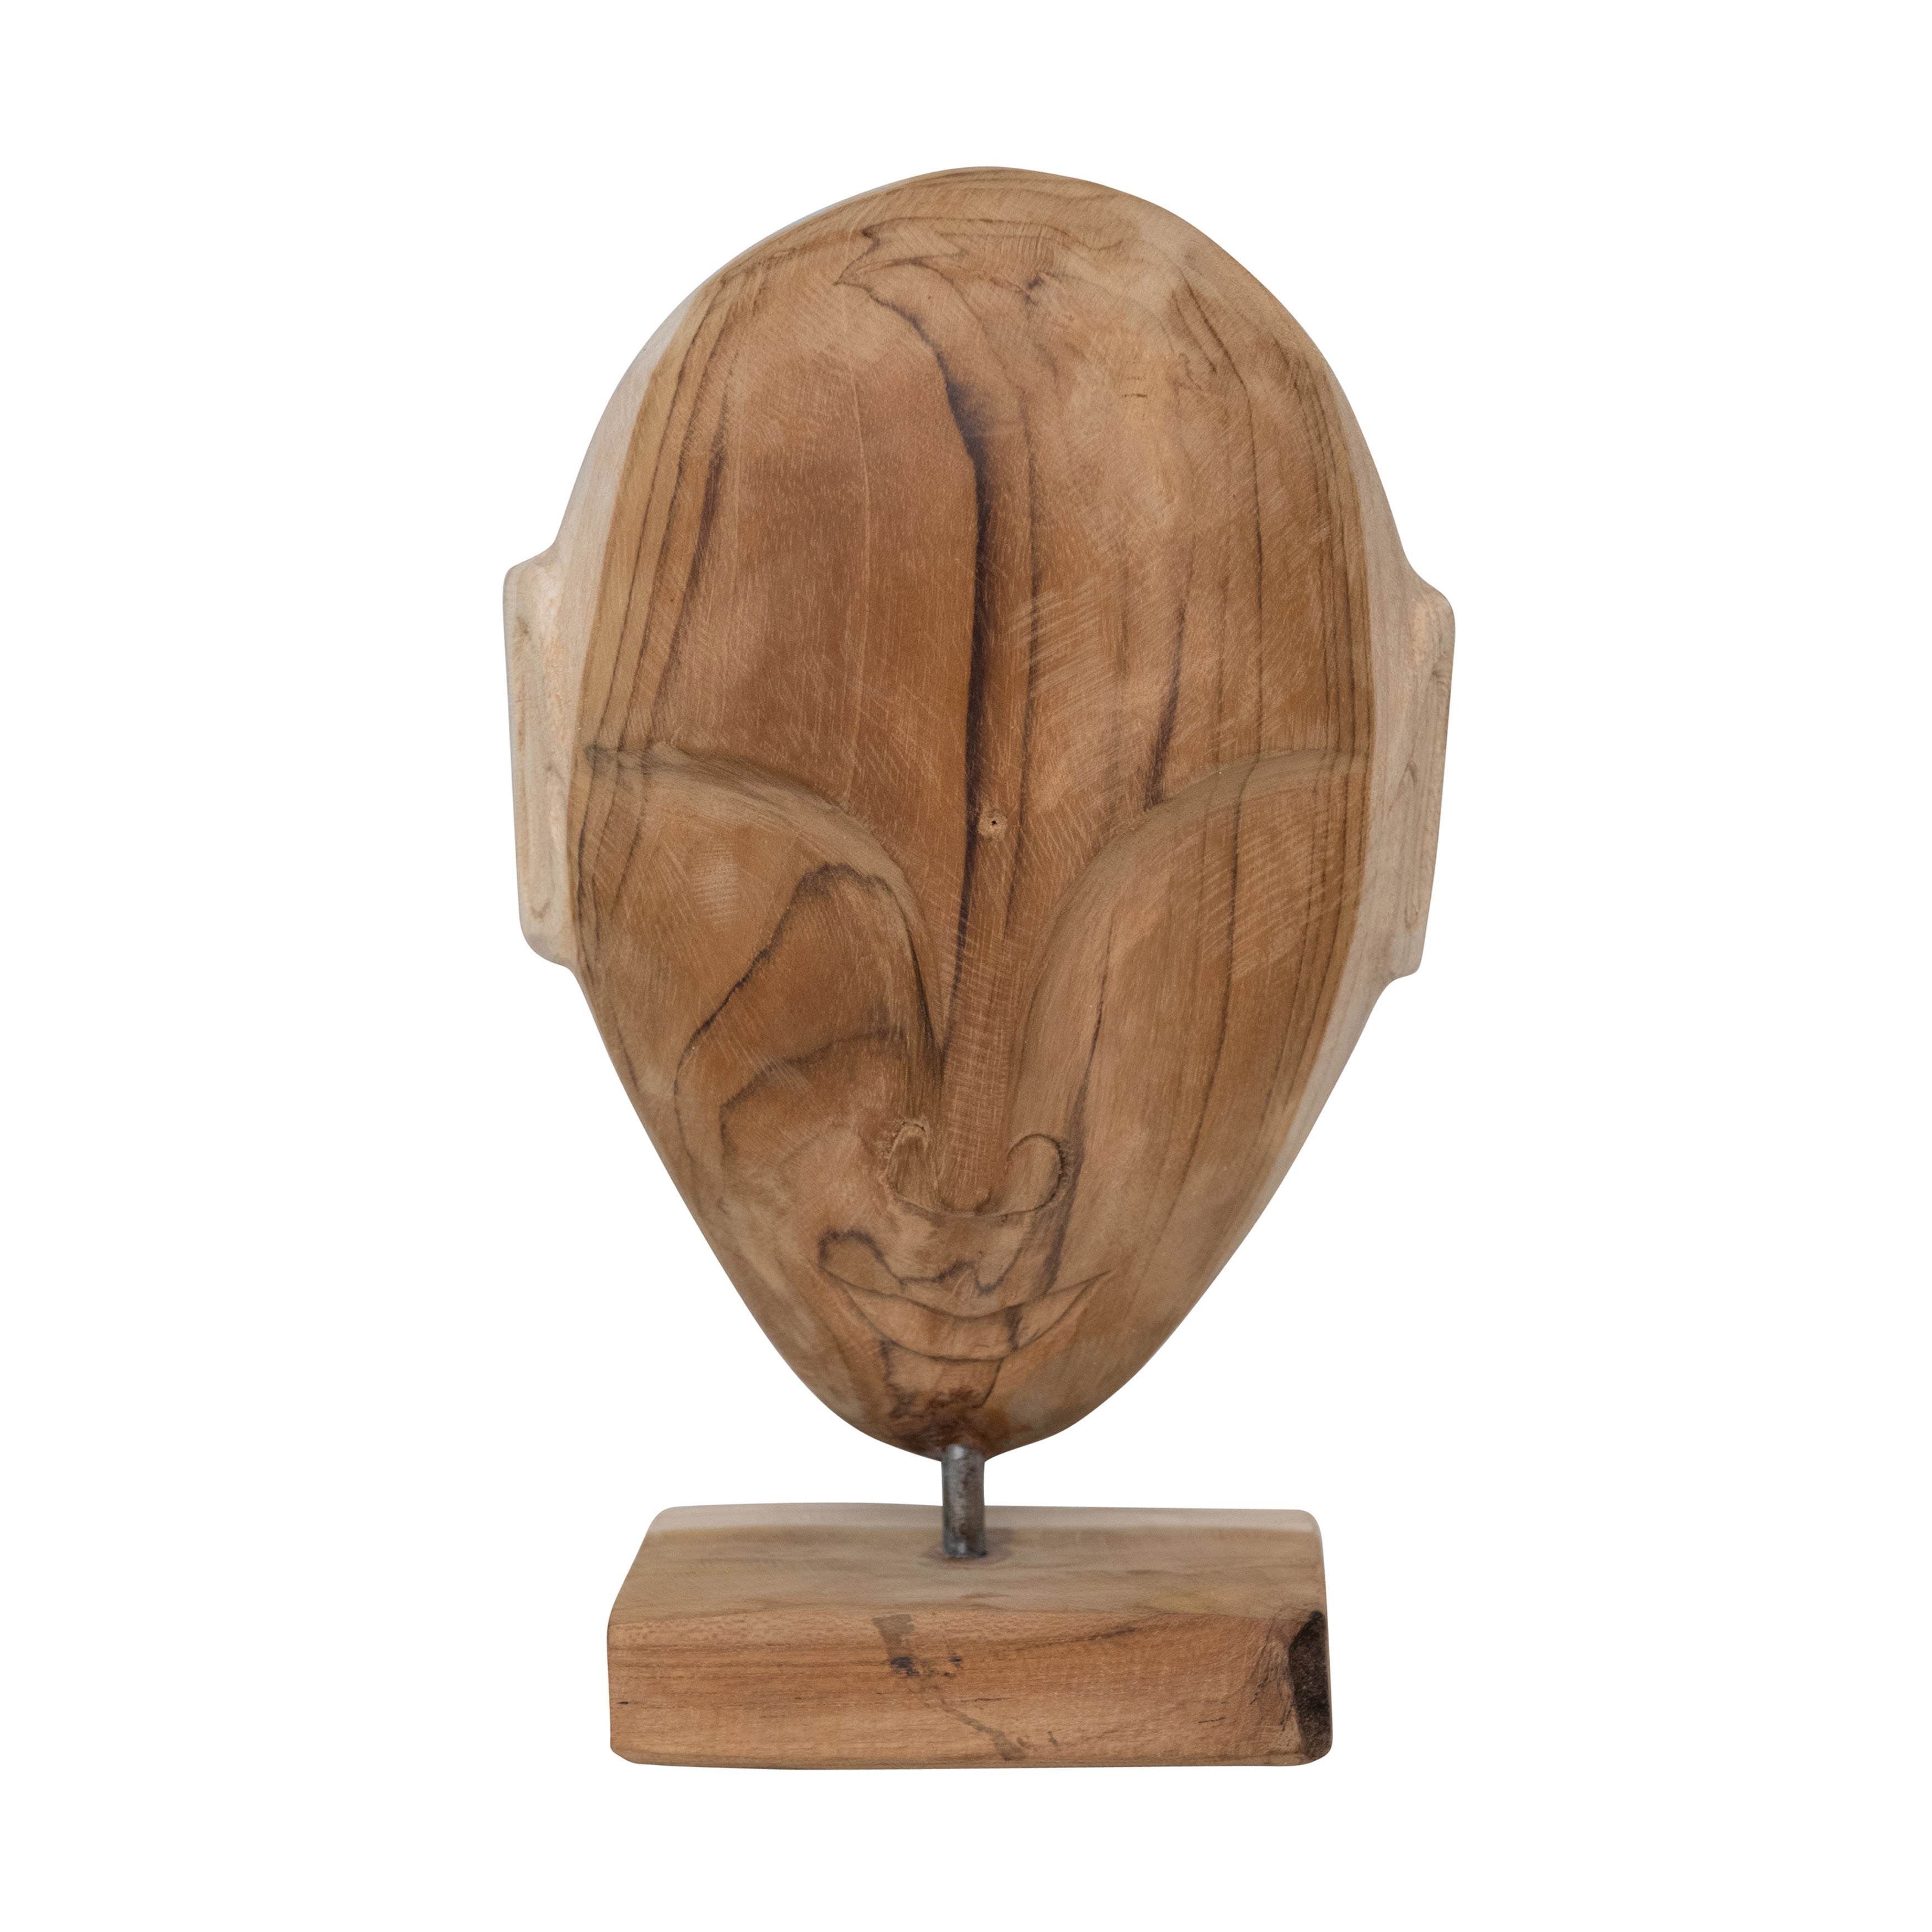  Hand Carved Teakwood Face Sculpture, Natural - Image 0